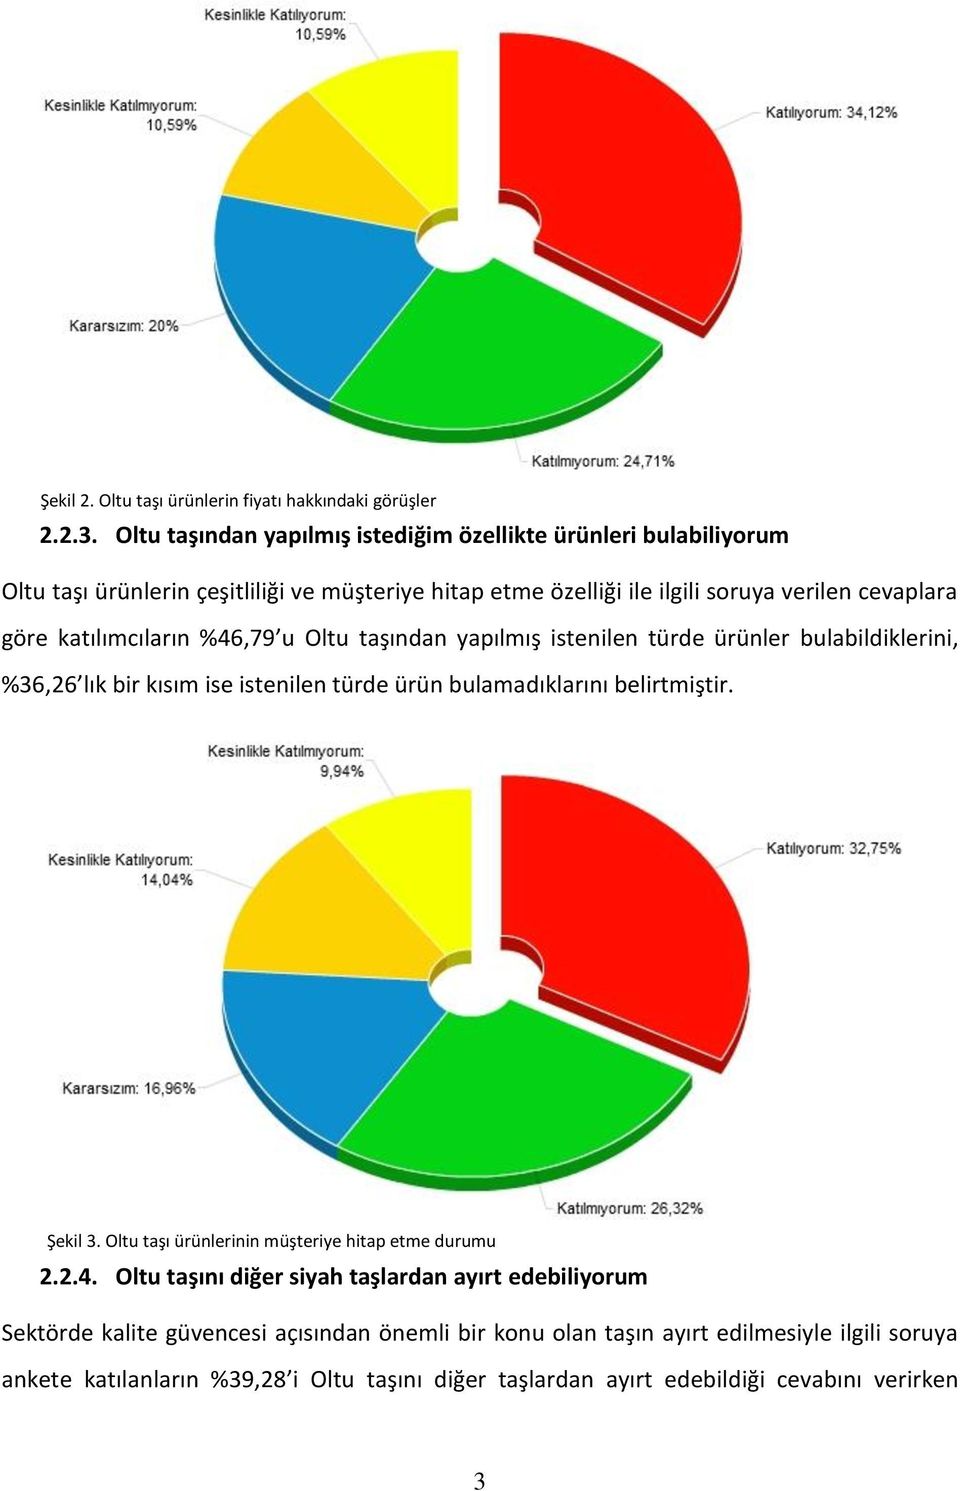 katılımcıların %46,79 u Oltu taşından yapılmış istenilen türde ürünler bulabildiklerini, %36,26 lık bir kısım ise istenilen türde ürün bulamadıklarını belirtmiştir. Şekil 3.